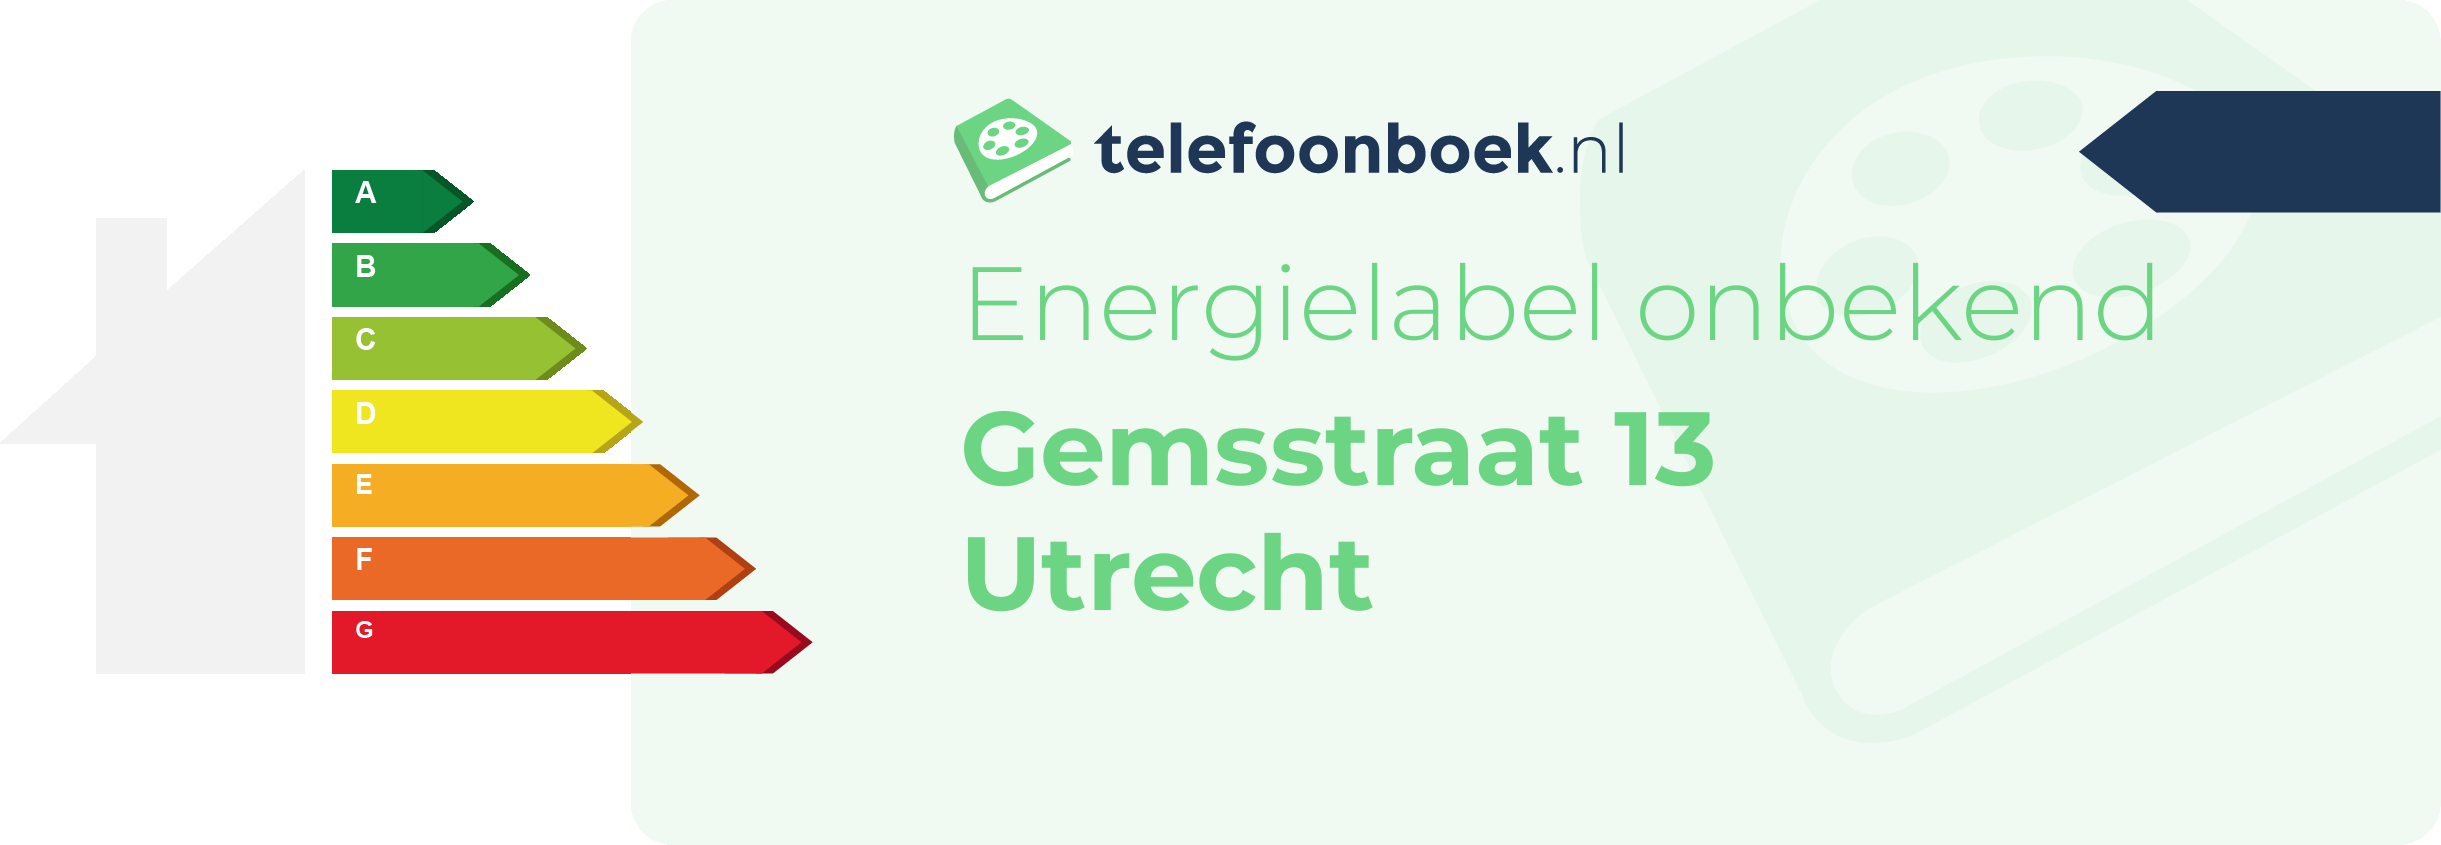 Energielabel Gemsstraat 13 Utrecht